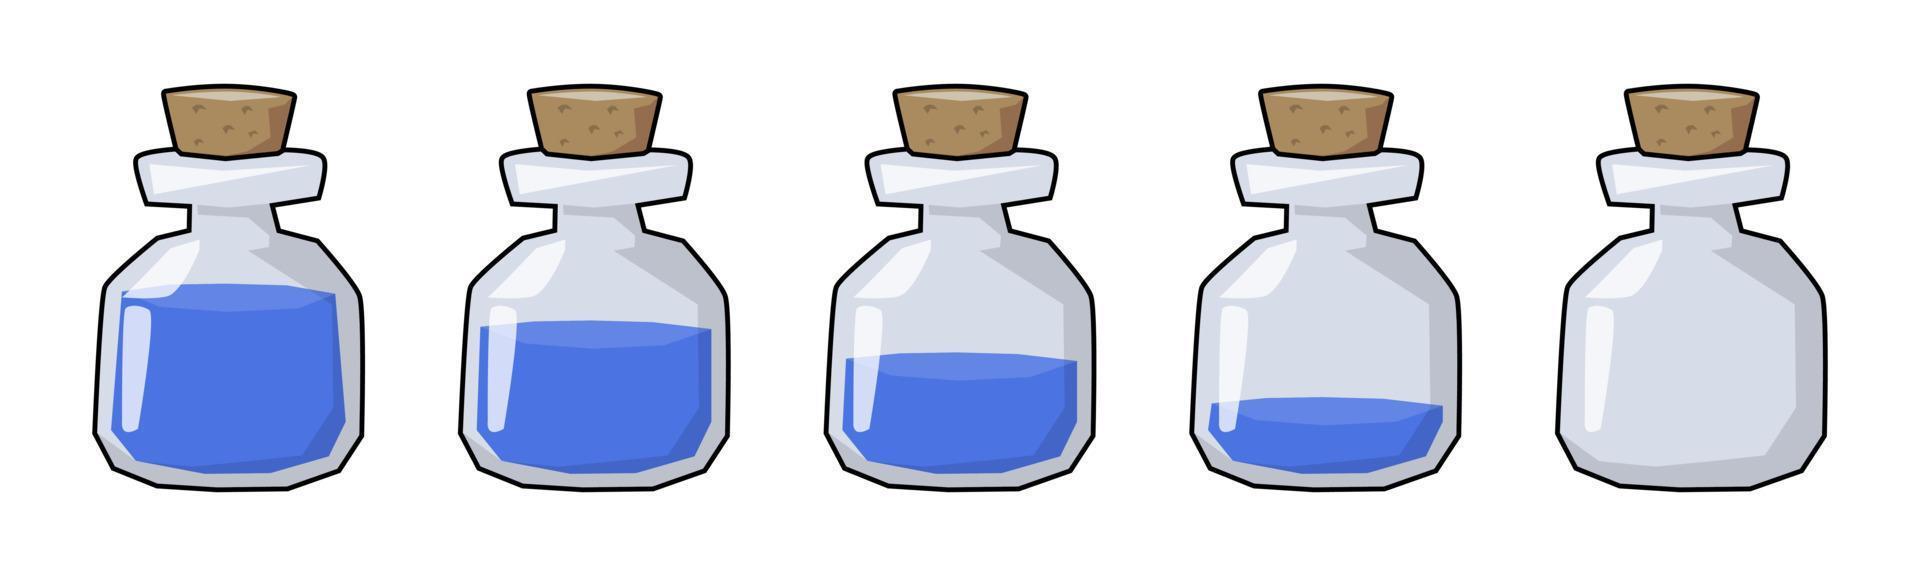 conjunto de plantillas de iconos de vector de juego de video de botella de poción de agua estilizada caricaturesca